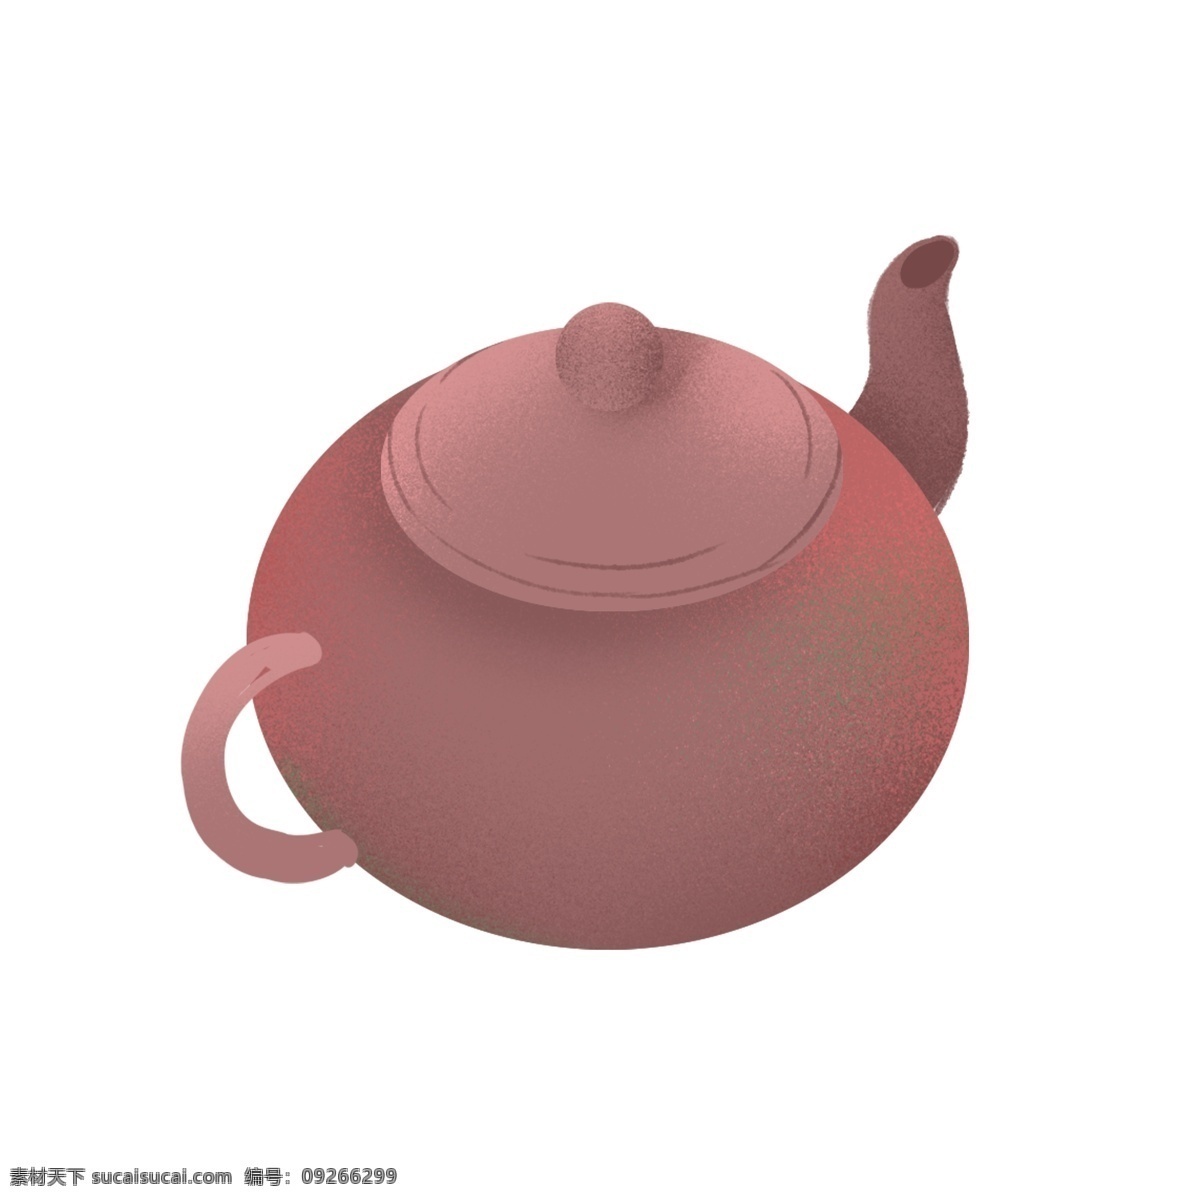 一个 紫砂茶壶 图案 茶壶 水壶 茶壶图案 容器 紫砂壶 设计元素 元素设计 手绘元素 免抠元素